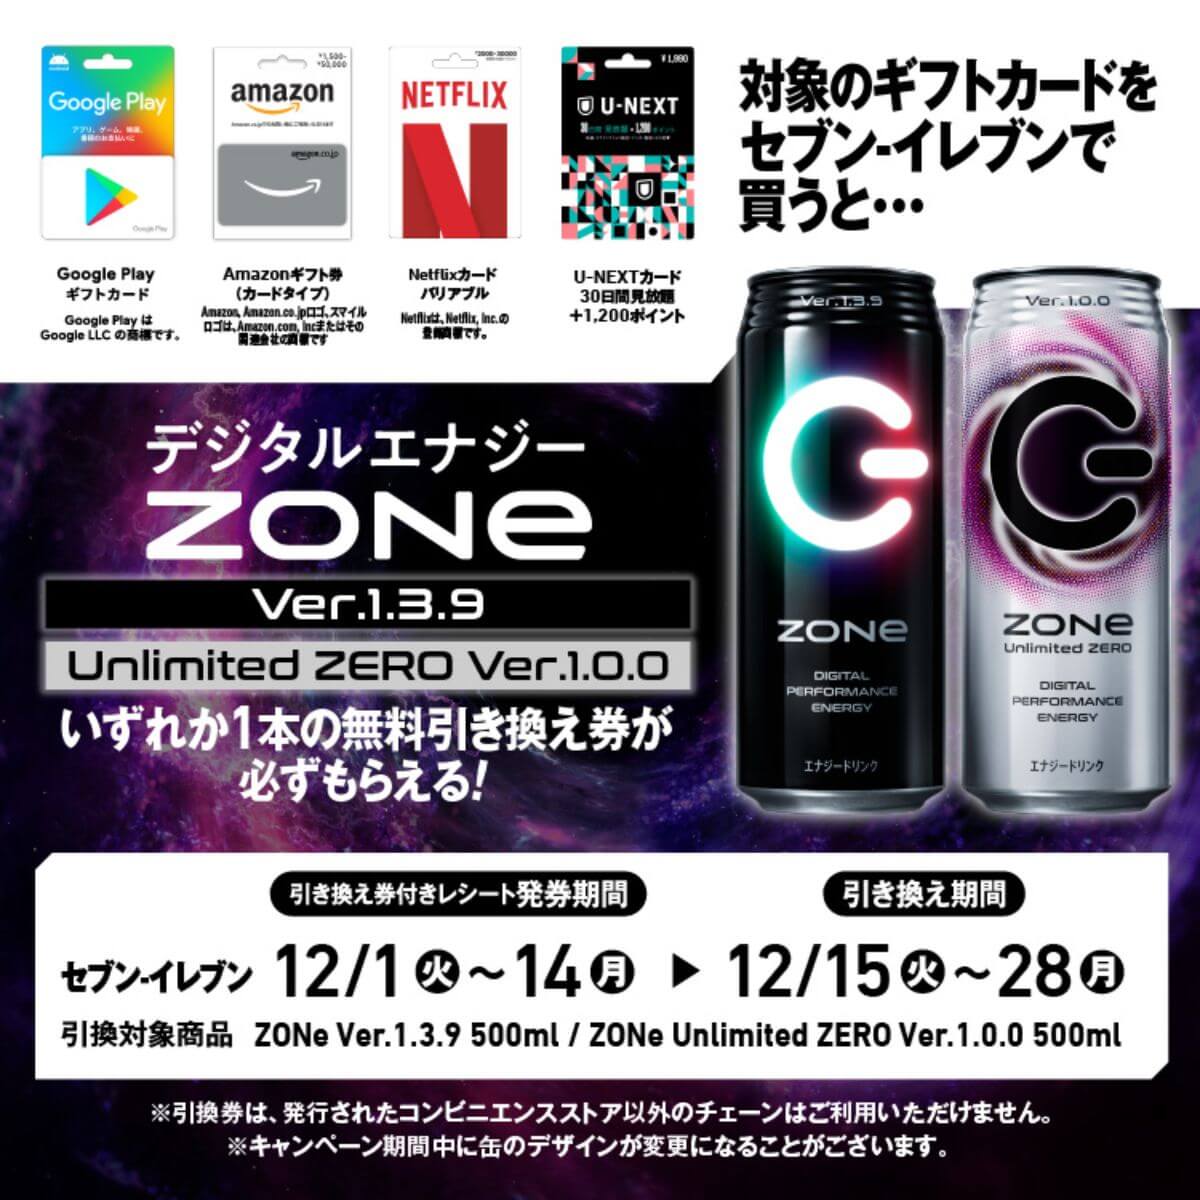 ZONE免費兌換活動_12月1日7-11